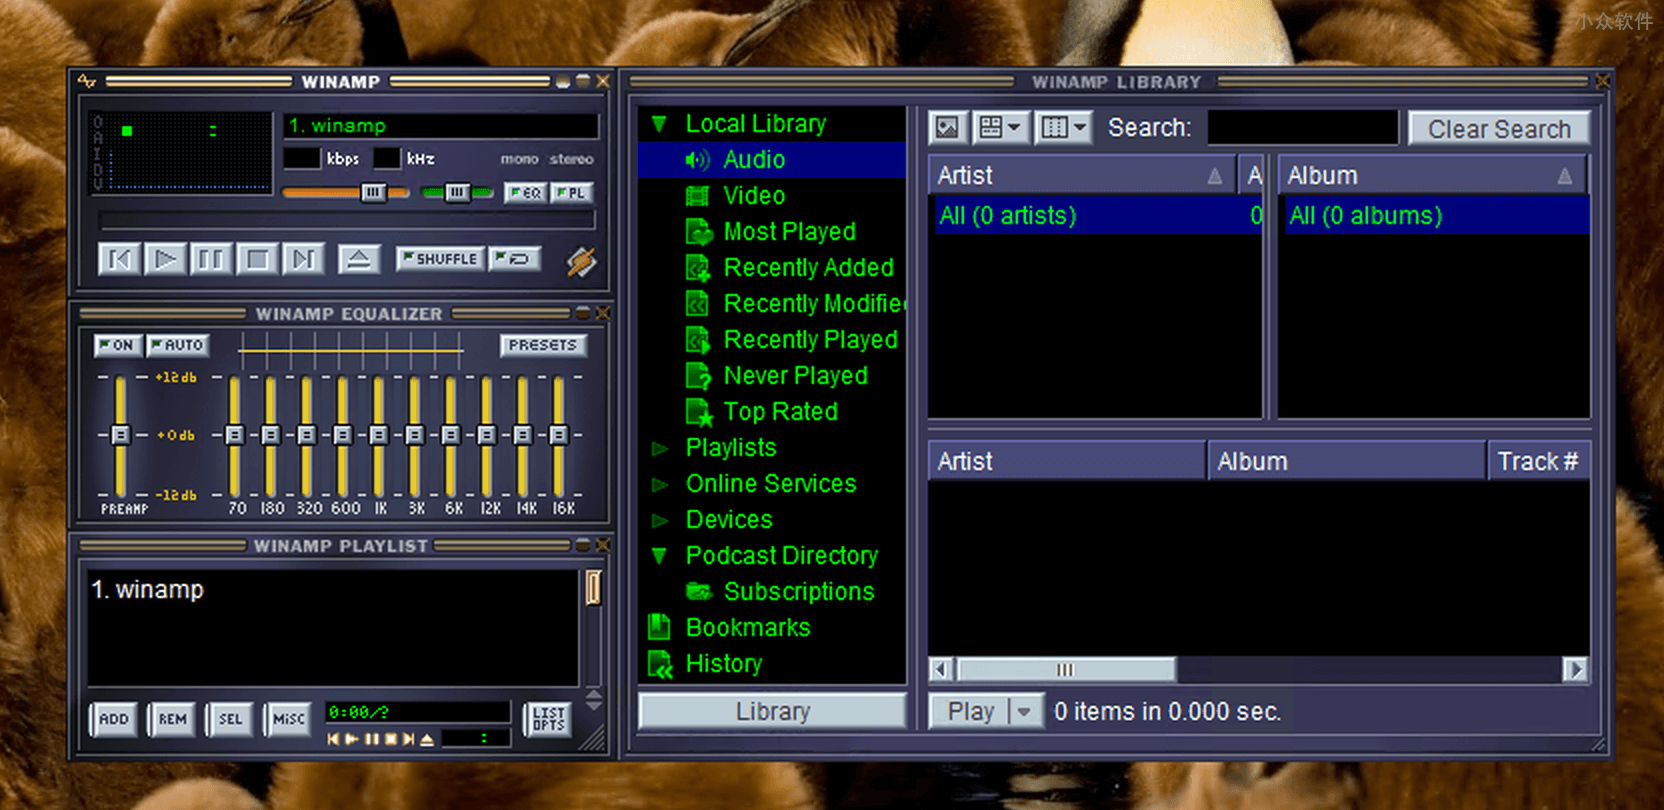 曾经的经典音乐播放器发布 4 年来的第一个版本：Winamp 5.8 1